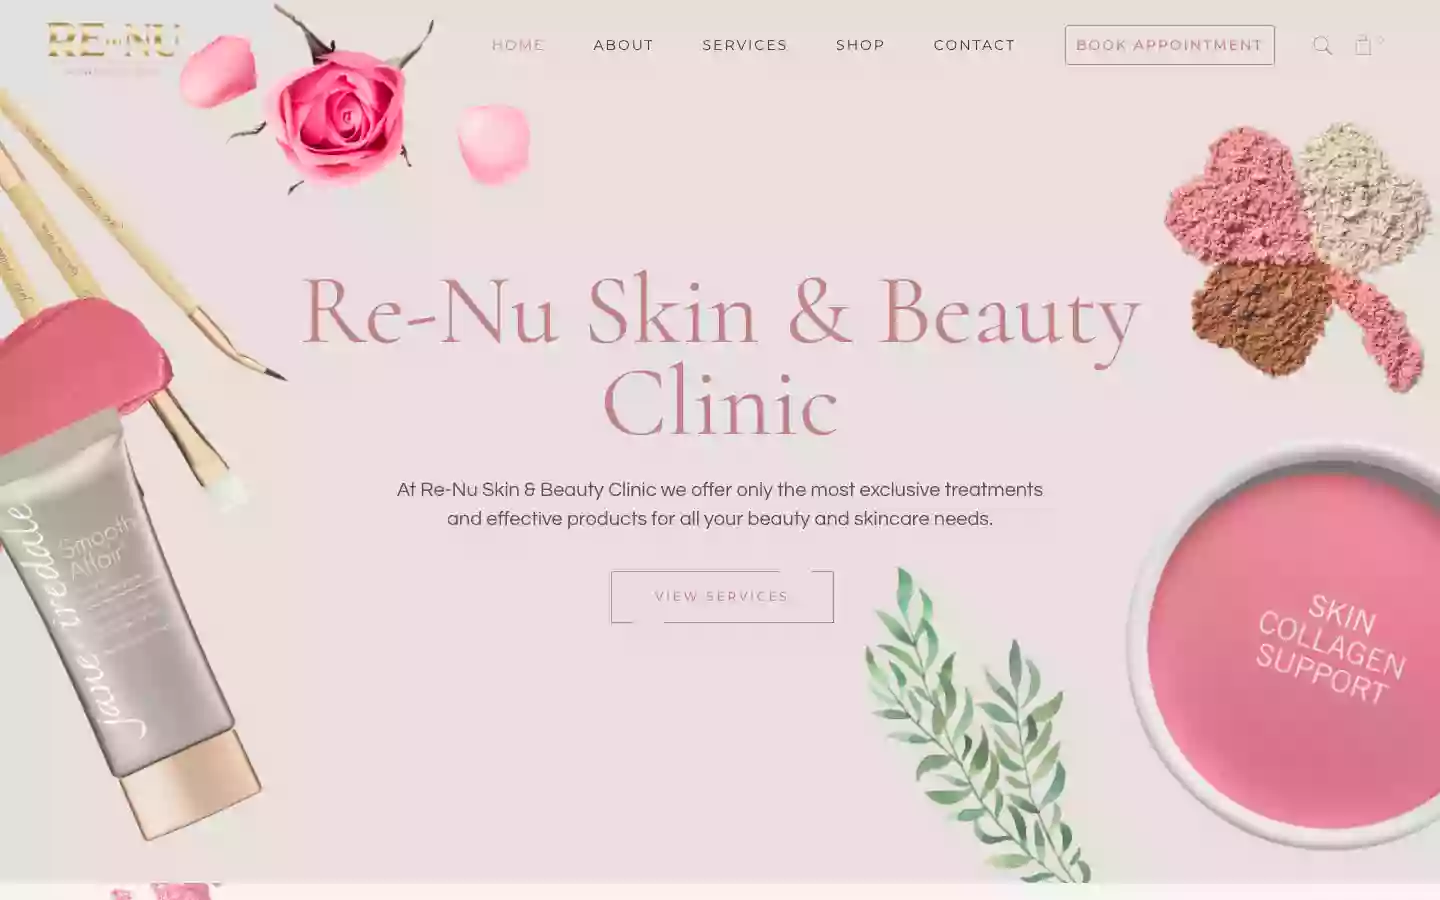 Re-Nu Skin & Beauty Clinic